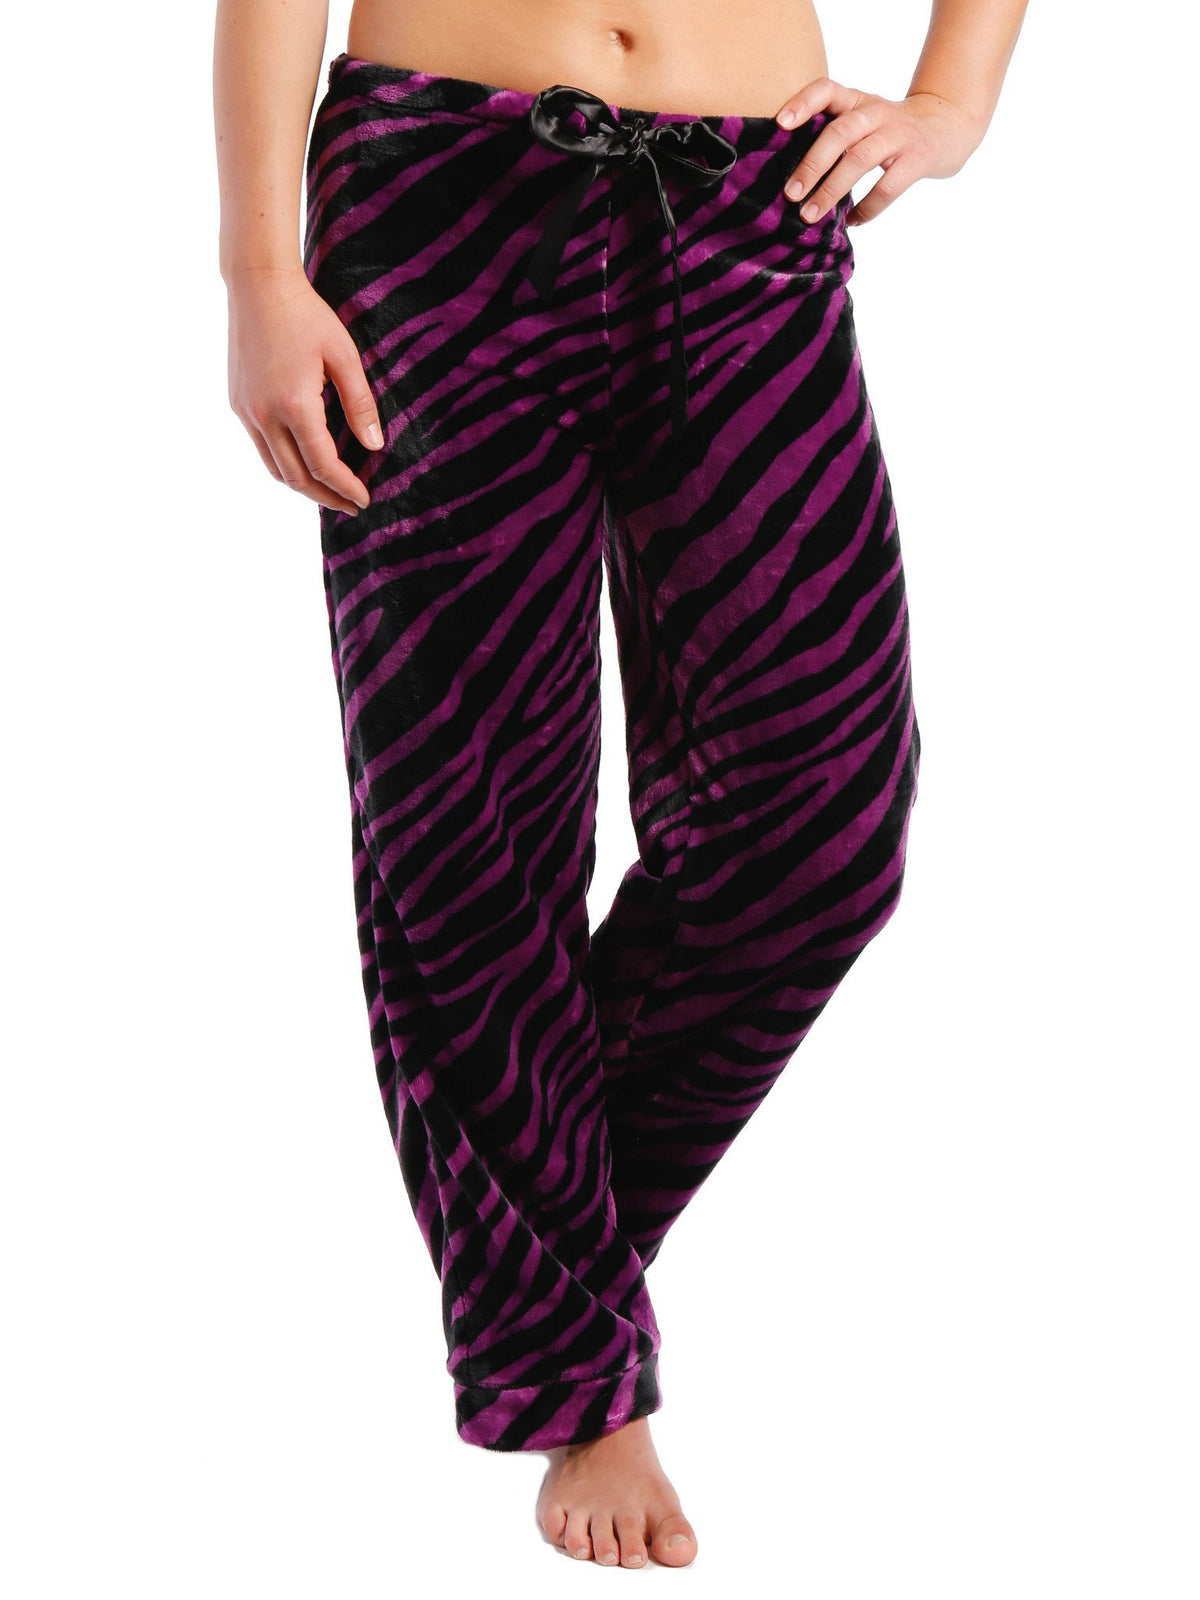 Women's Lush Butterfleece Lounge/Sleep Pants - Zebra - Purple/Black